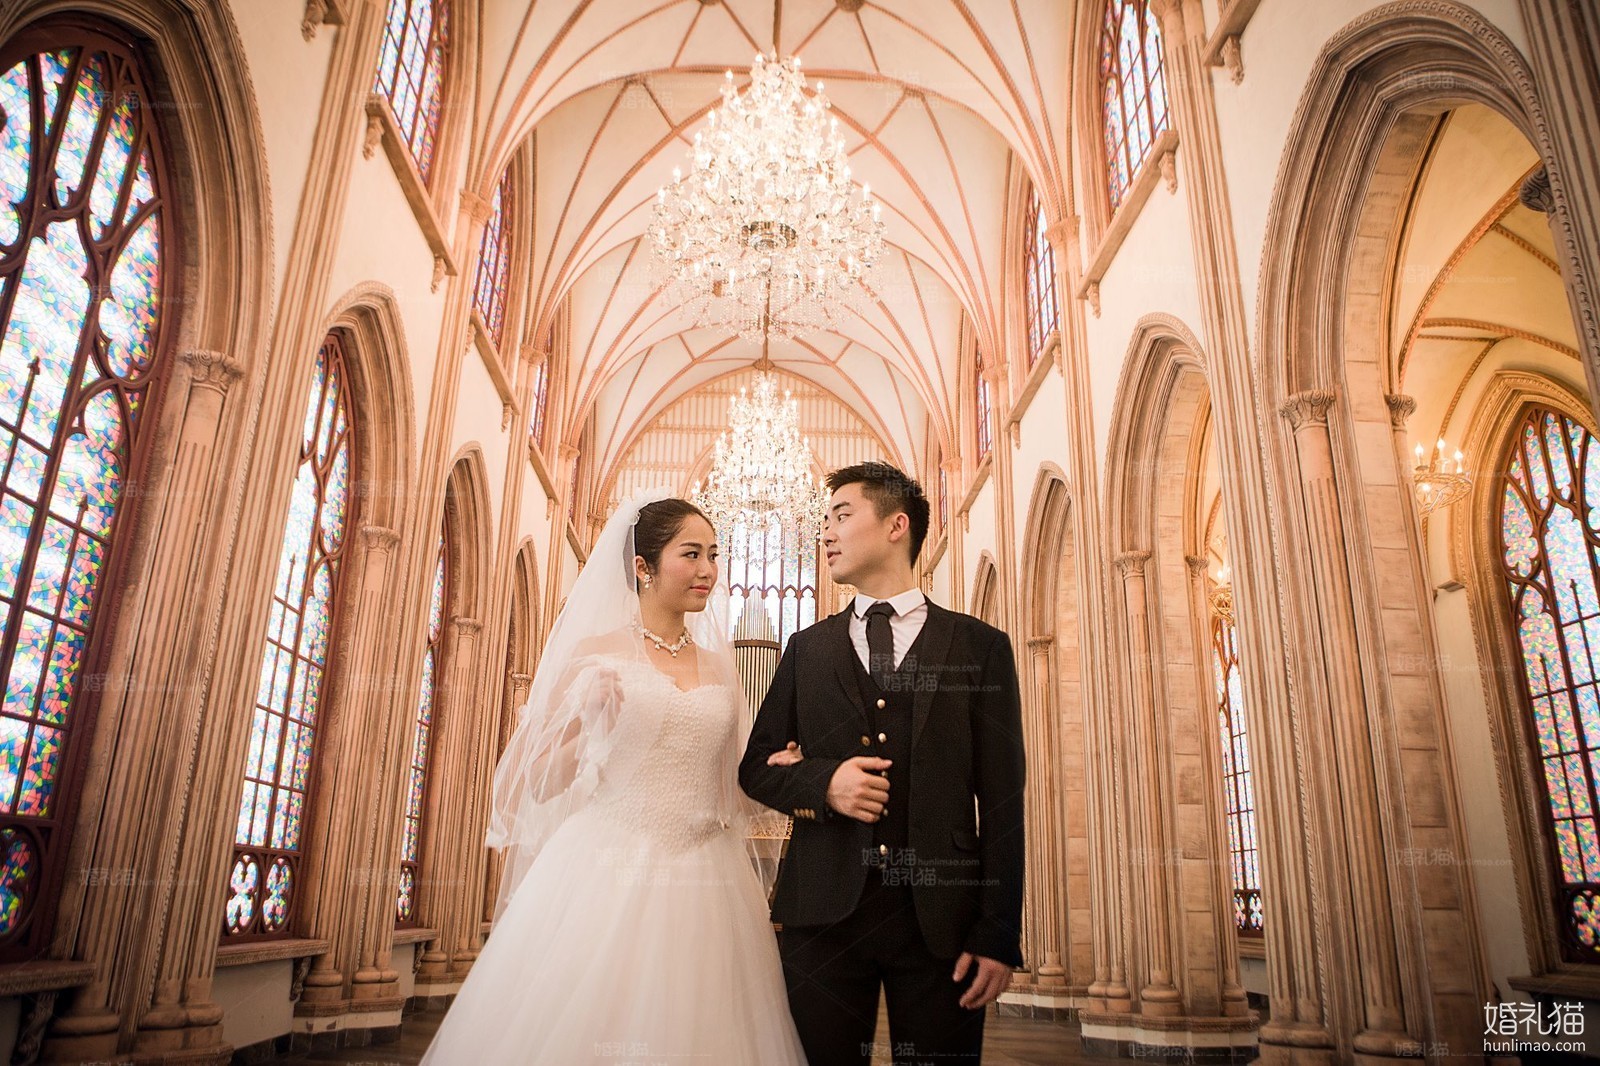 欧式婚纱摄影|城堡结婚照,[欧式, 城堡],云浮婚纱照,婚纱照图片